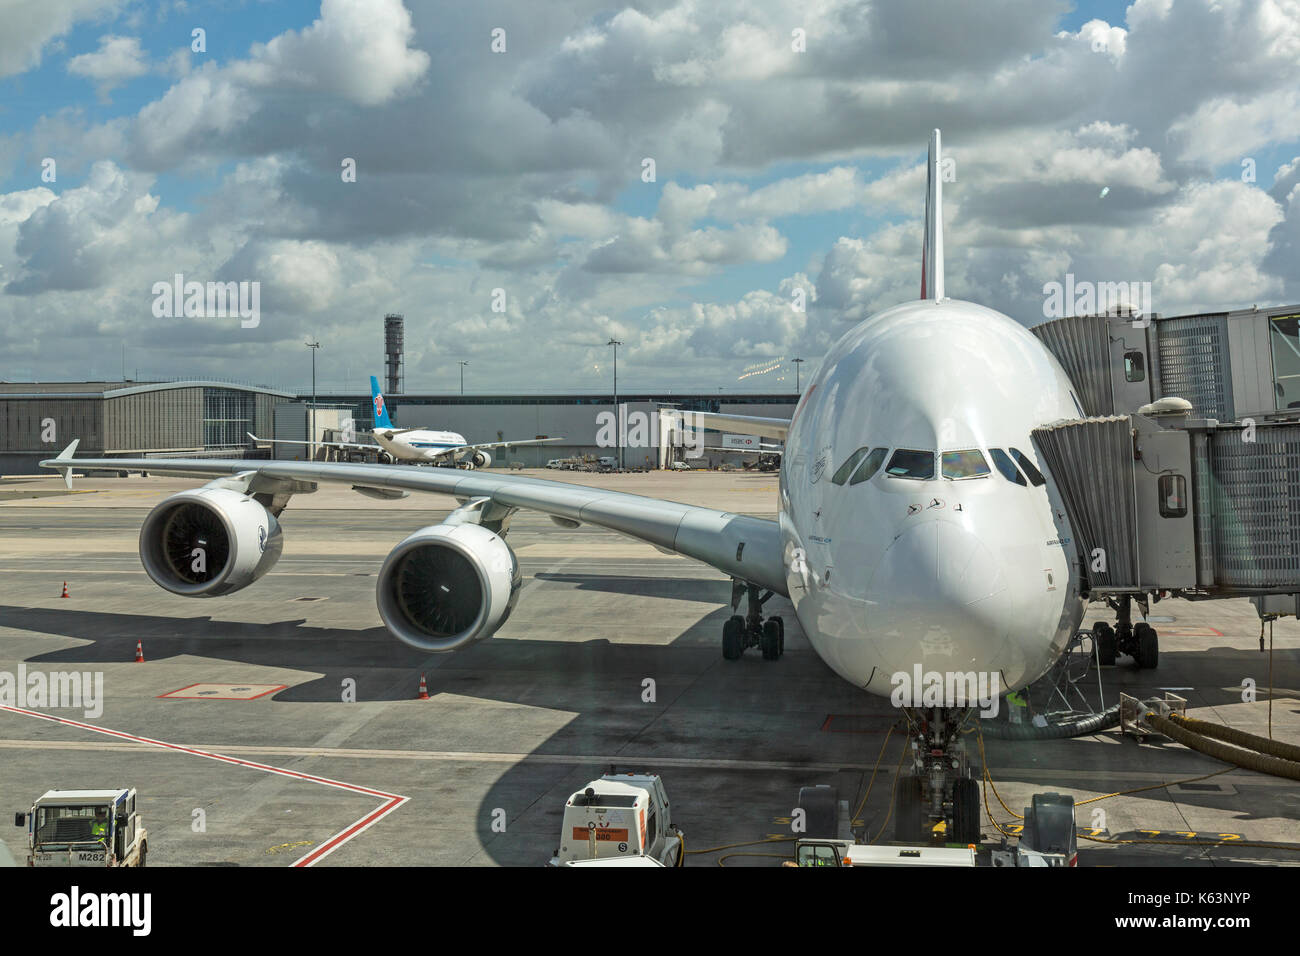 Air France Airbus A380, F-HPJC, am Flughafen Paris Charles De Gaulle, Frankreich. Zeigt die Flex der großen Flügel und Motoren. Stockfoto